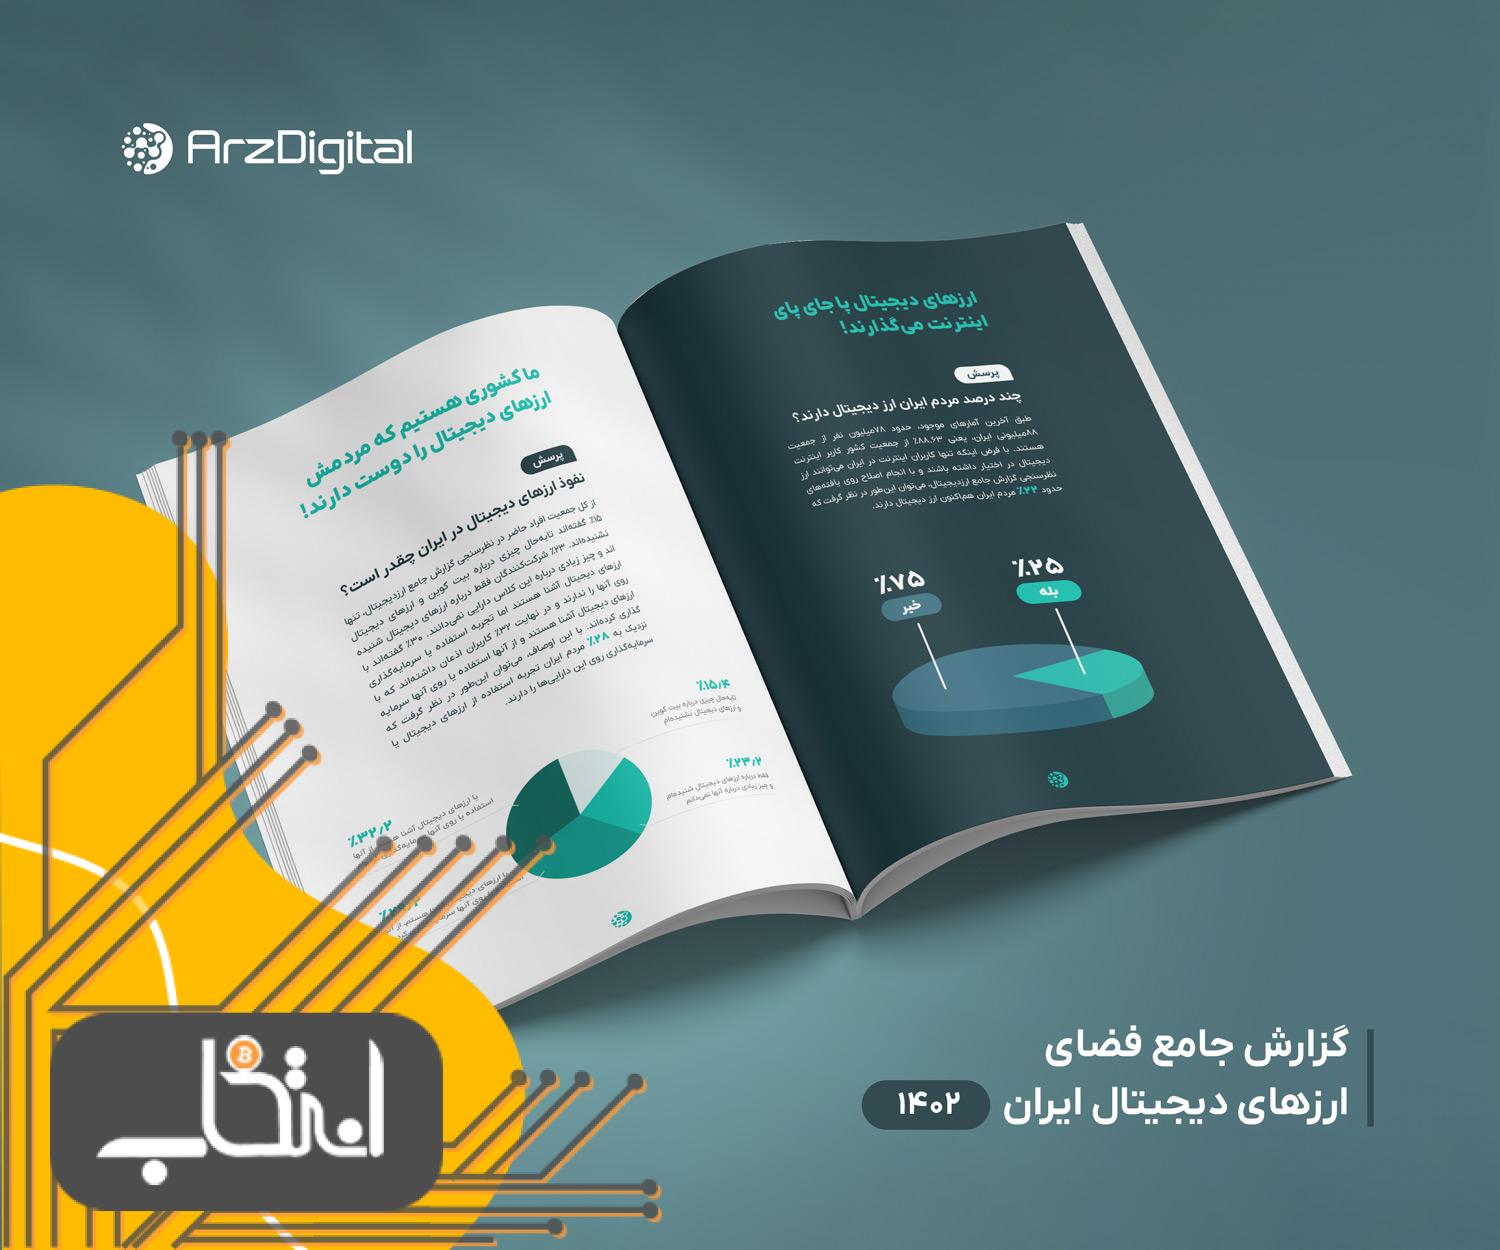 رونمایی از اولین گزارش جامع ارزهای دیجیتال ایران در رویداد دیفایردِی؛ شمارش معکوس تا ۵ آبان